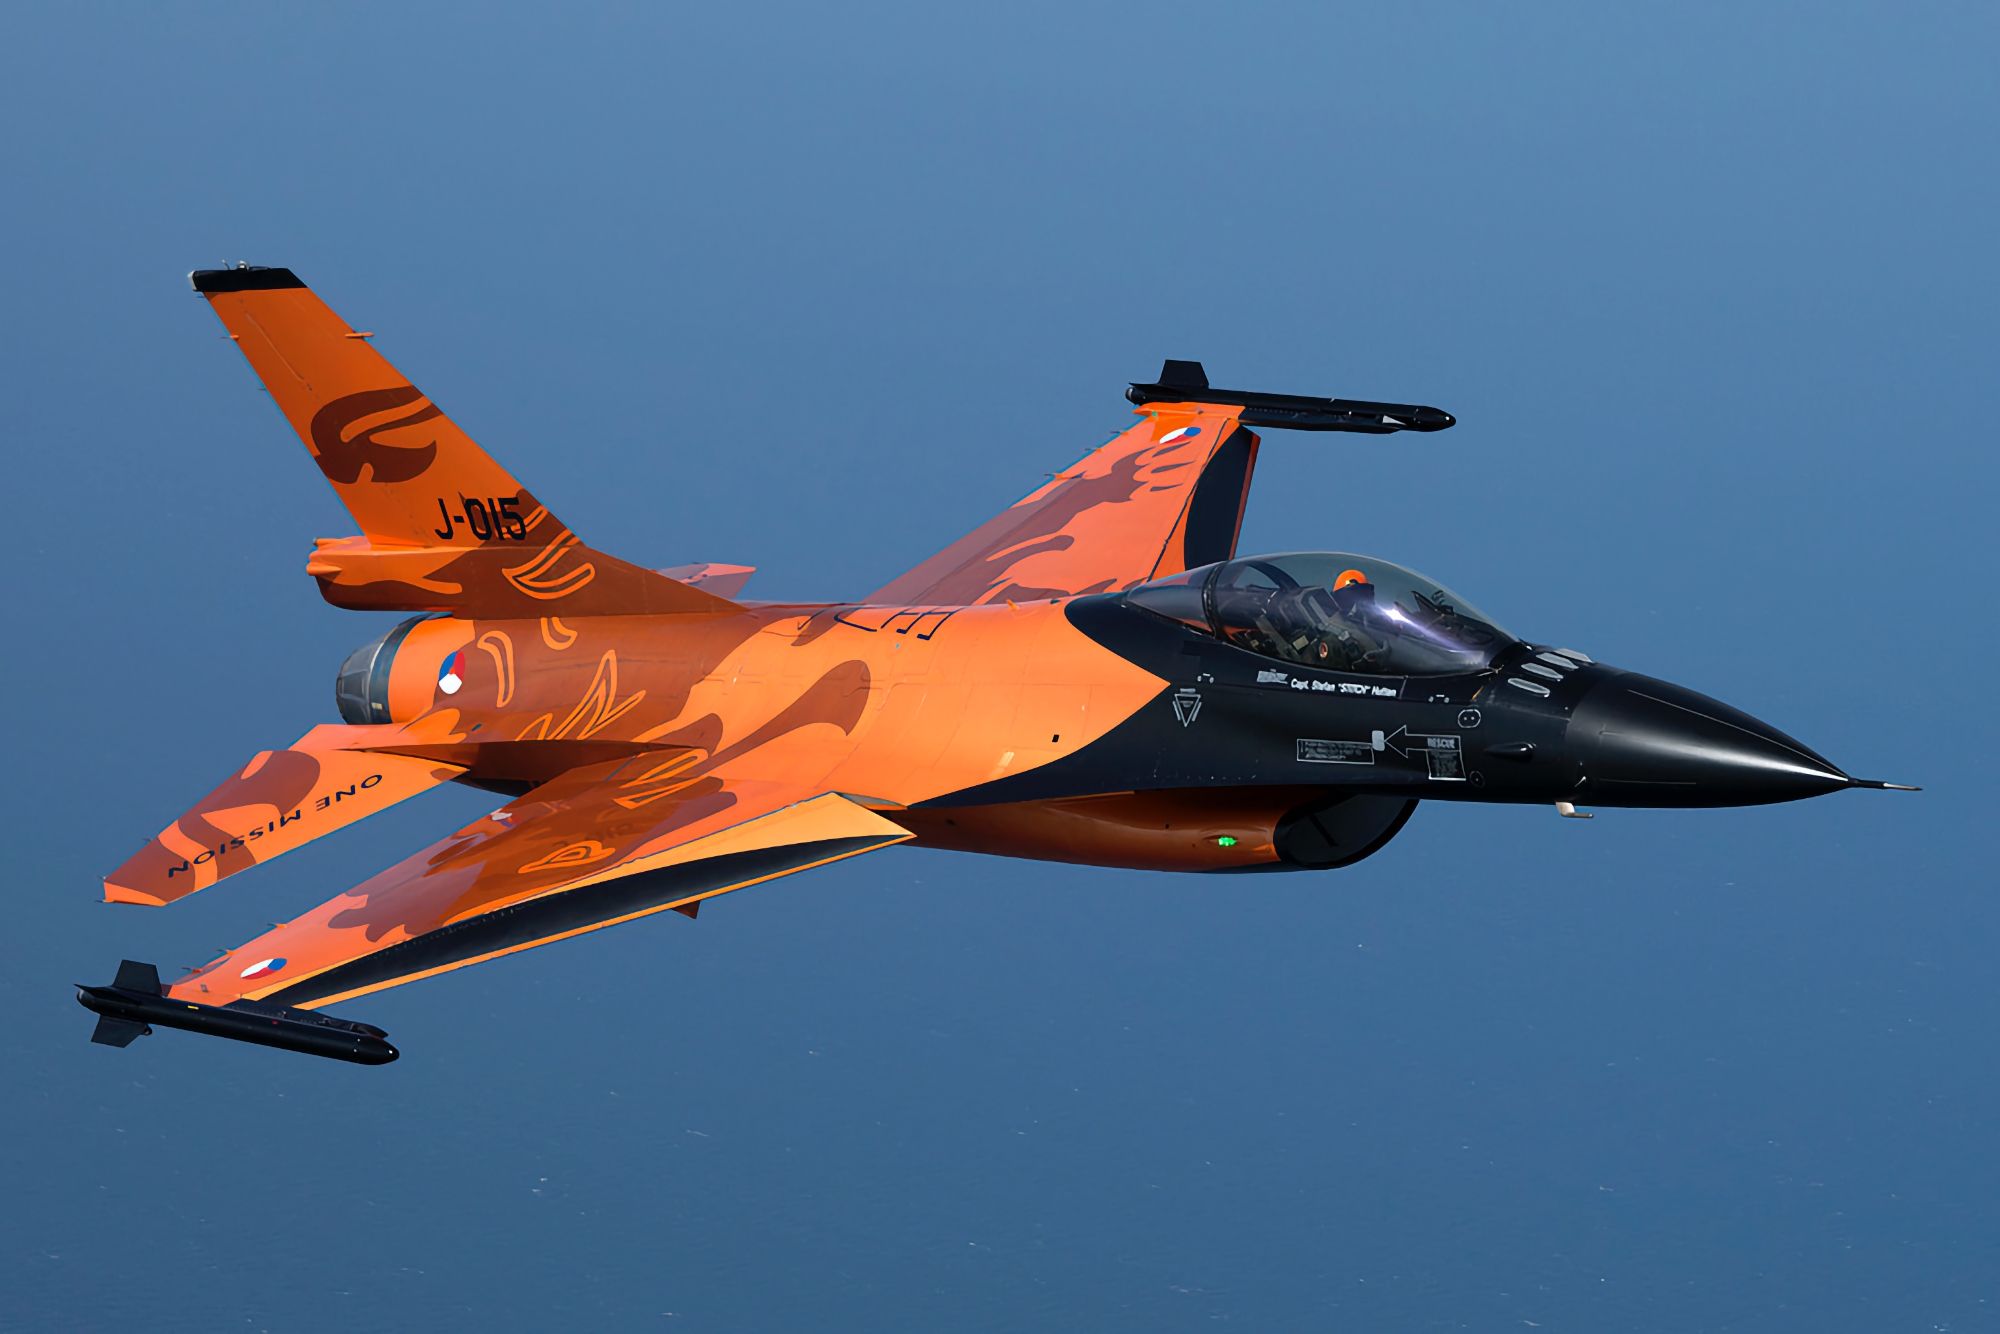 Offiziell: Niederlande liefern 24 F-16 Fighting Falcon Kampfflugzeuge an die Ukraine